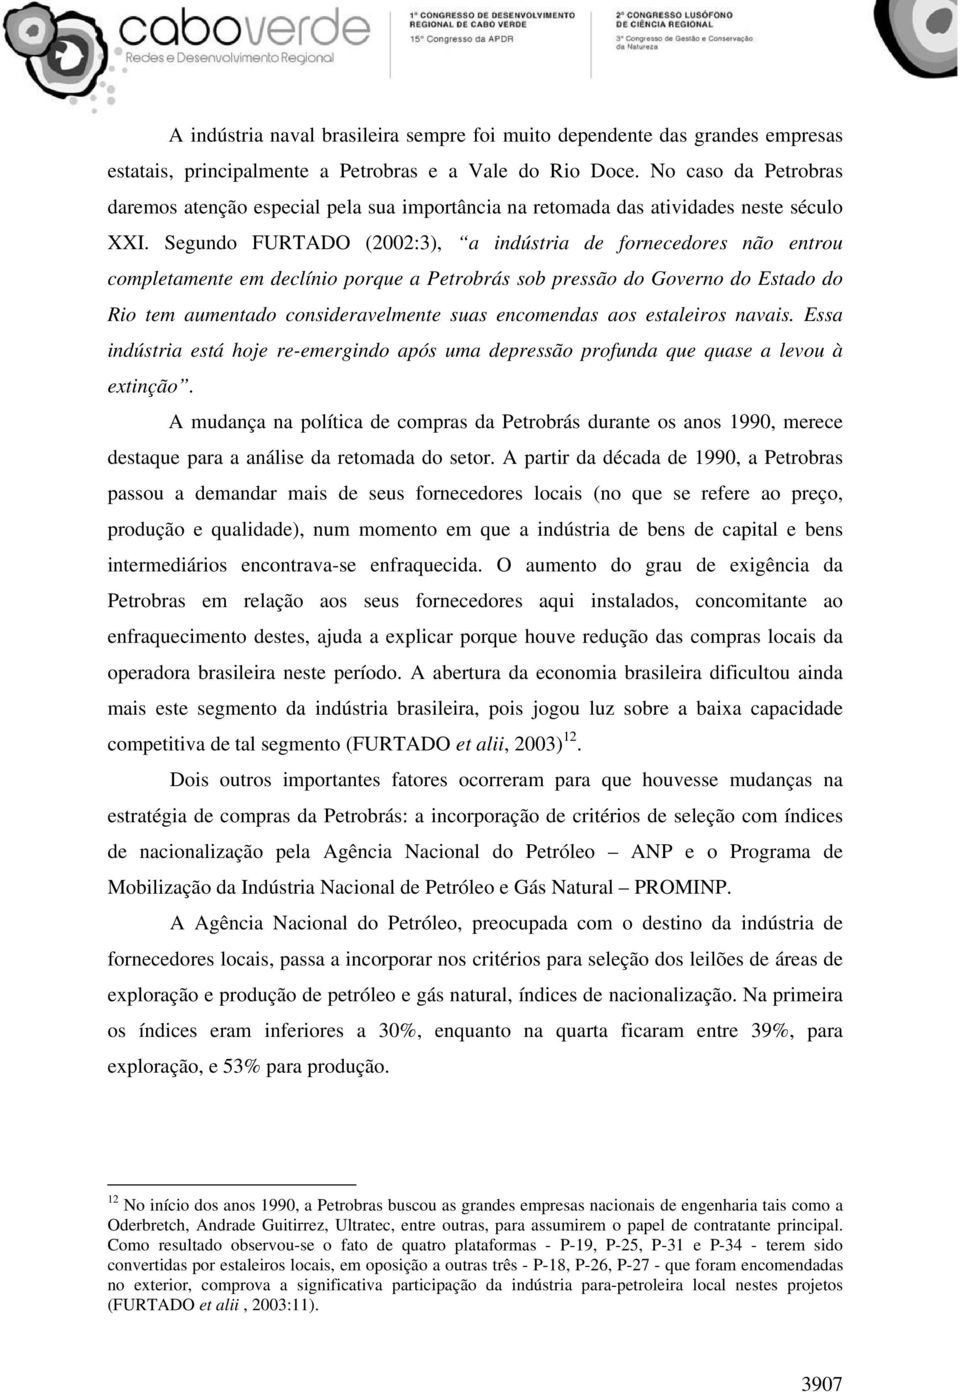 Segundo FURTADO (2002:3), a indústria de fornecedores não entrou completamente em declínio porque a Petrobrás sob pressão do Governo do Estado do Rio tem aumentado consideravelmente suas encomendas